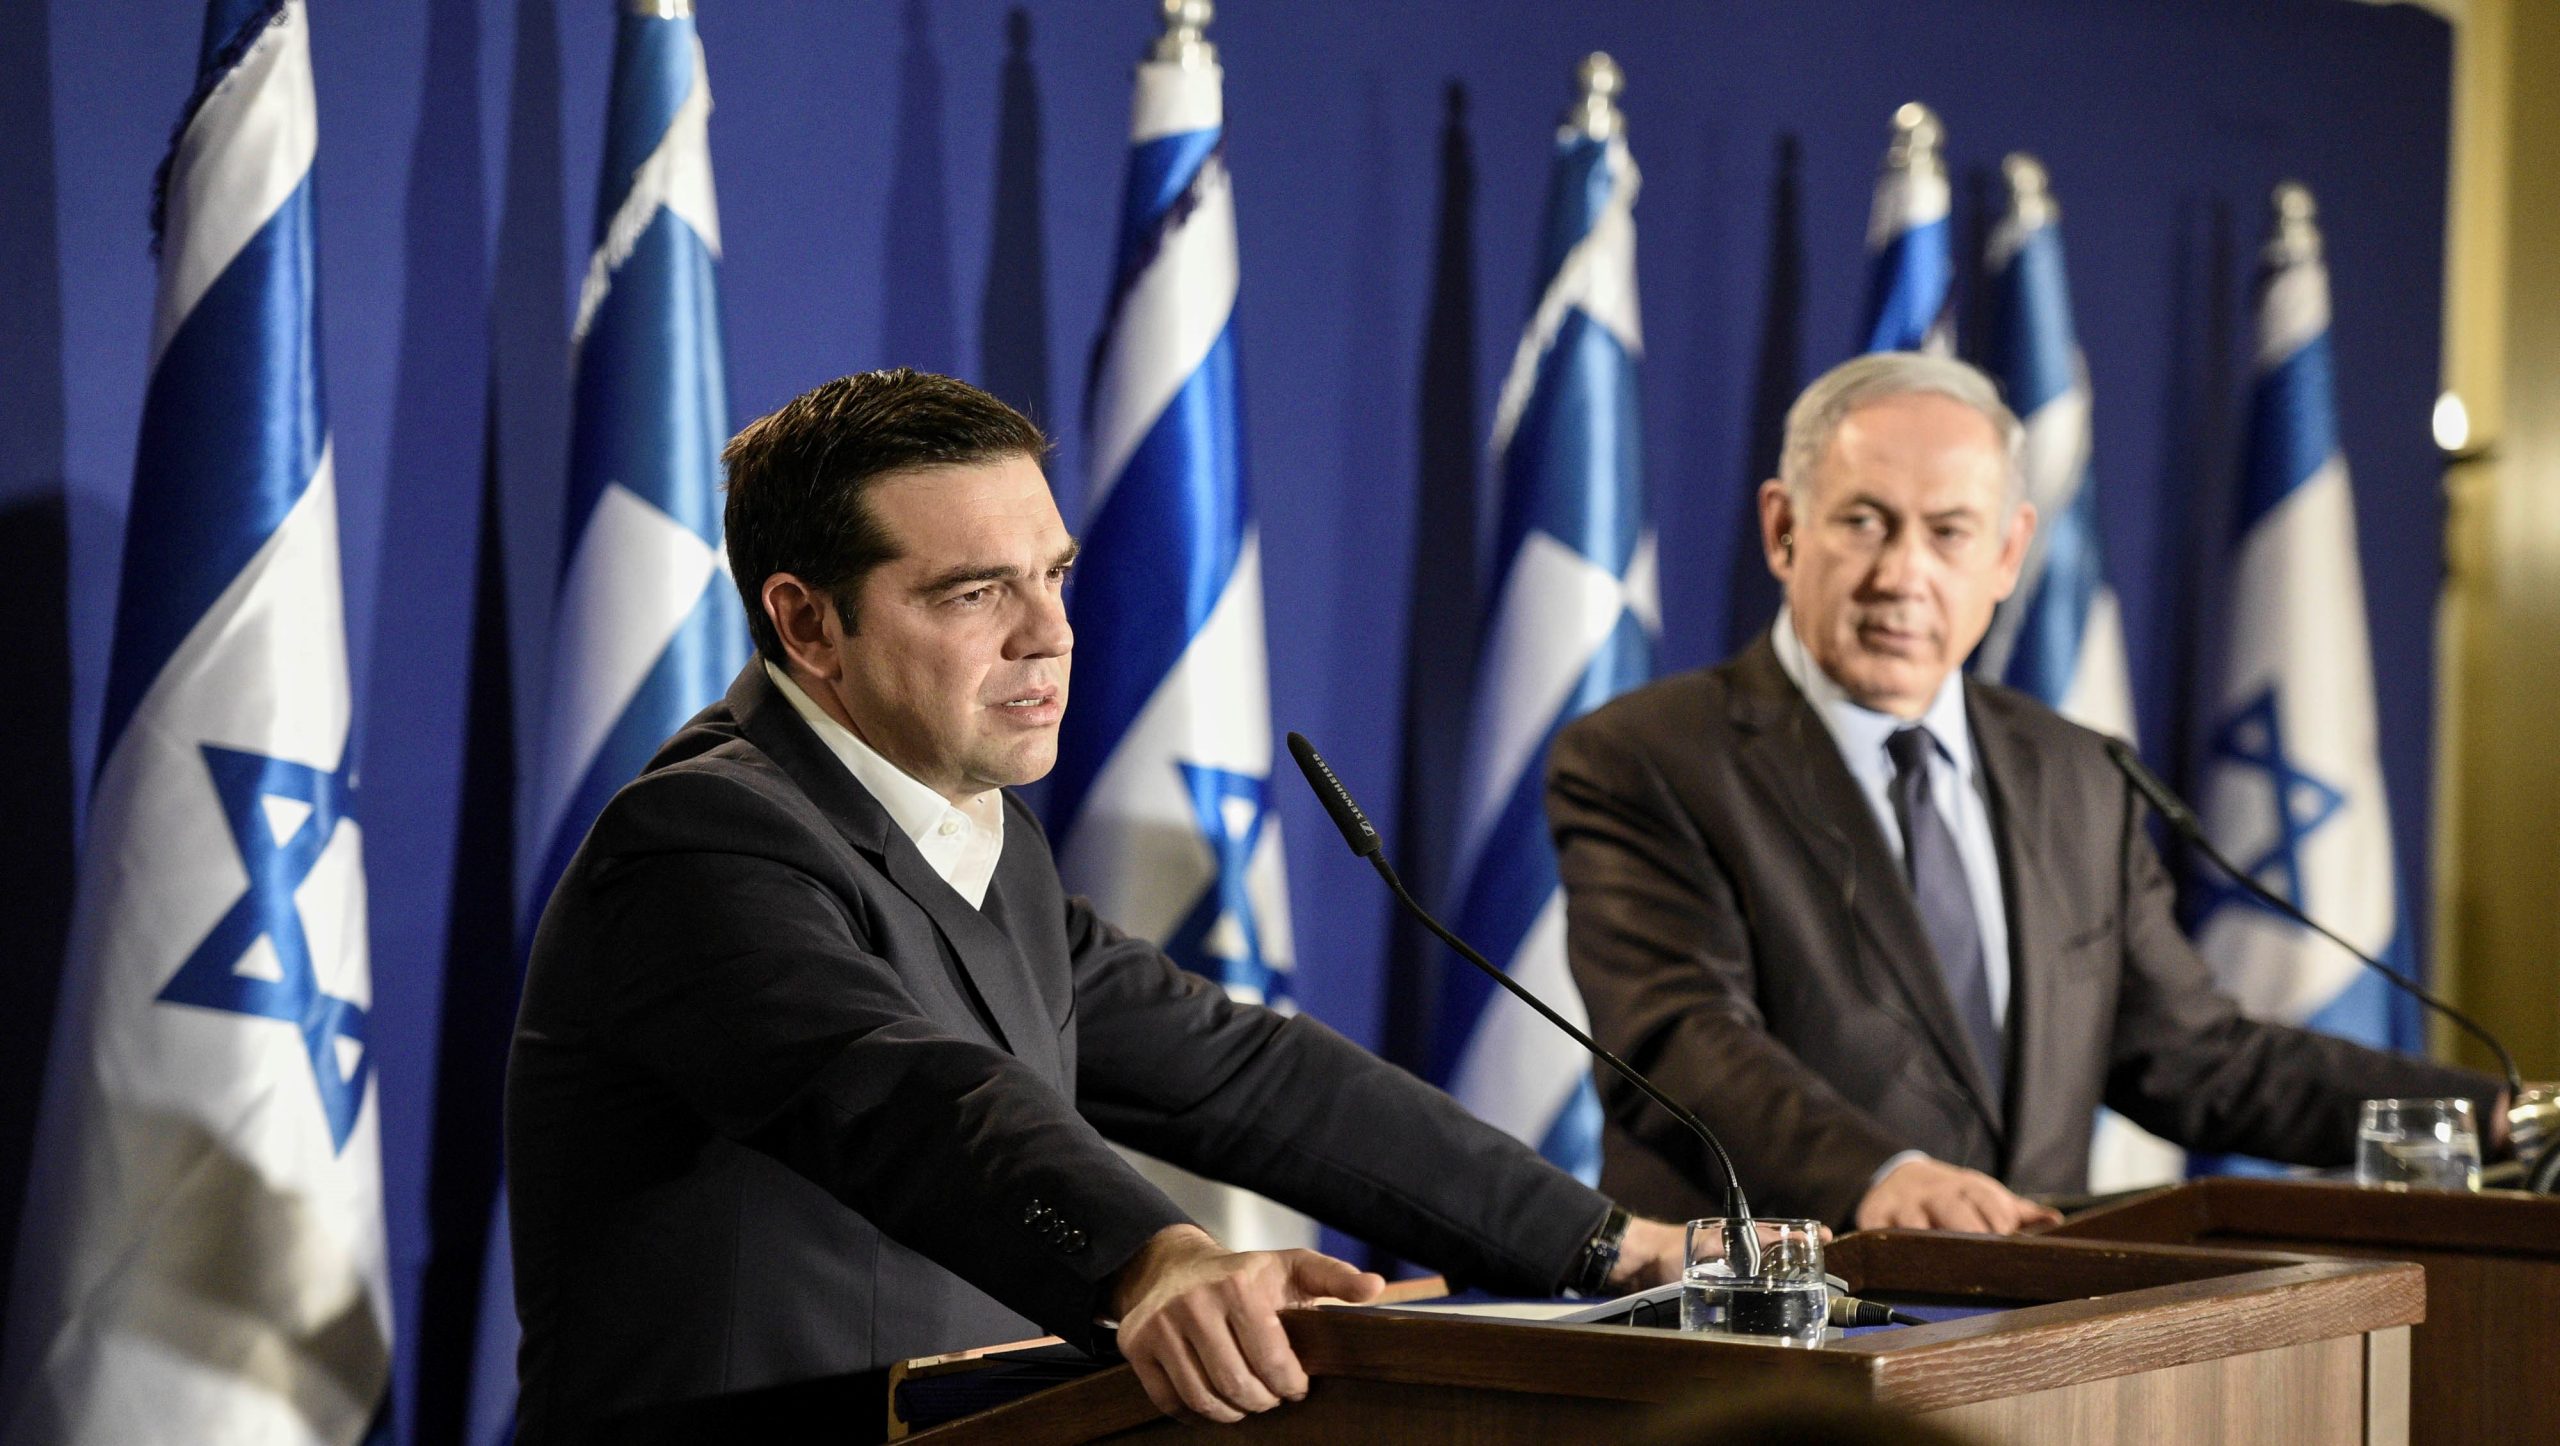 Διμερής συμφωνία για την «εξερεύνηση και αξιοποίηση του διαστήματος» υπογράφουν Ελλάδα και Ισραήλ